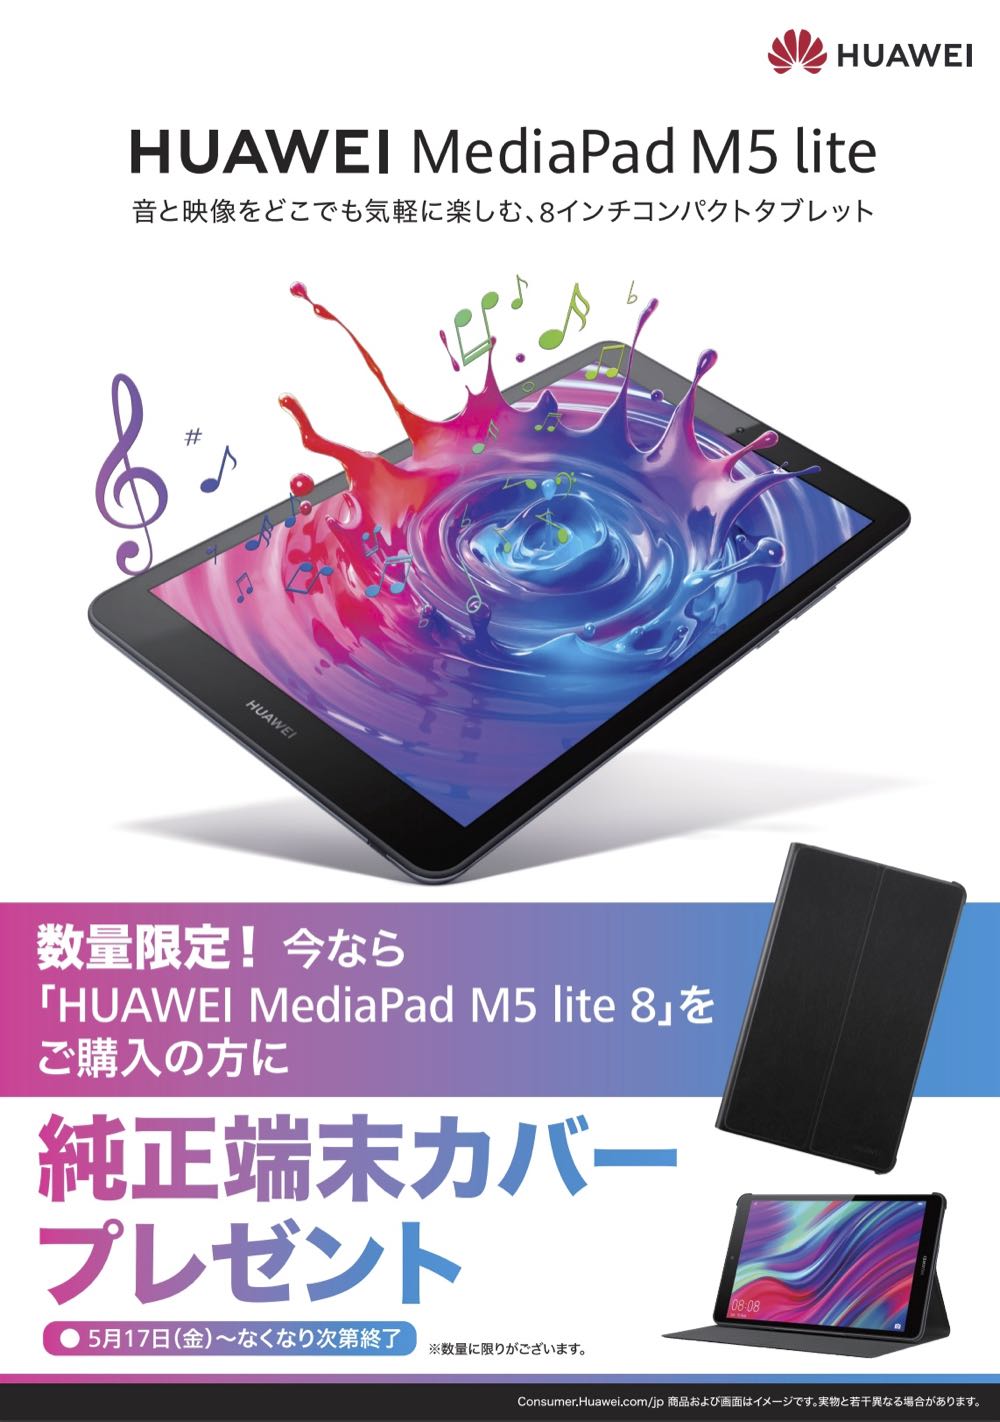 大きさ 性能 価格の 三方よし な8インチ Huawei Mediapad M5 Lite新登場 Engadget 日本版